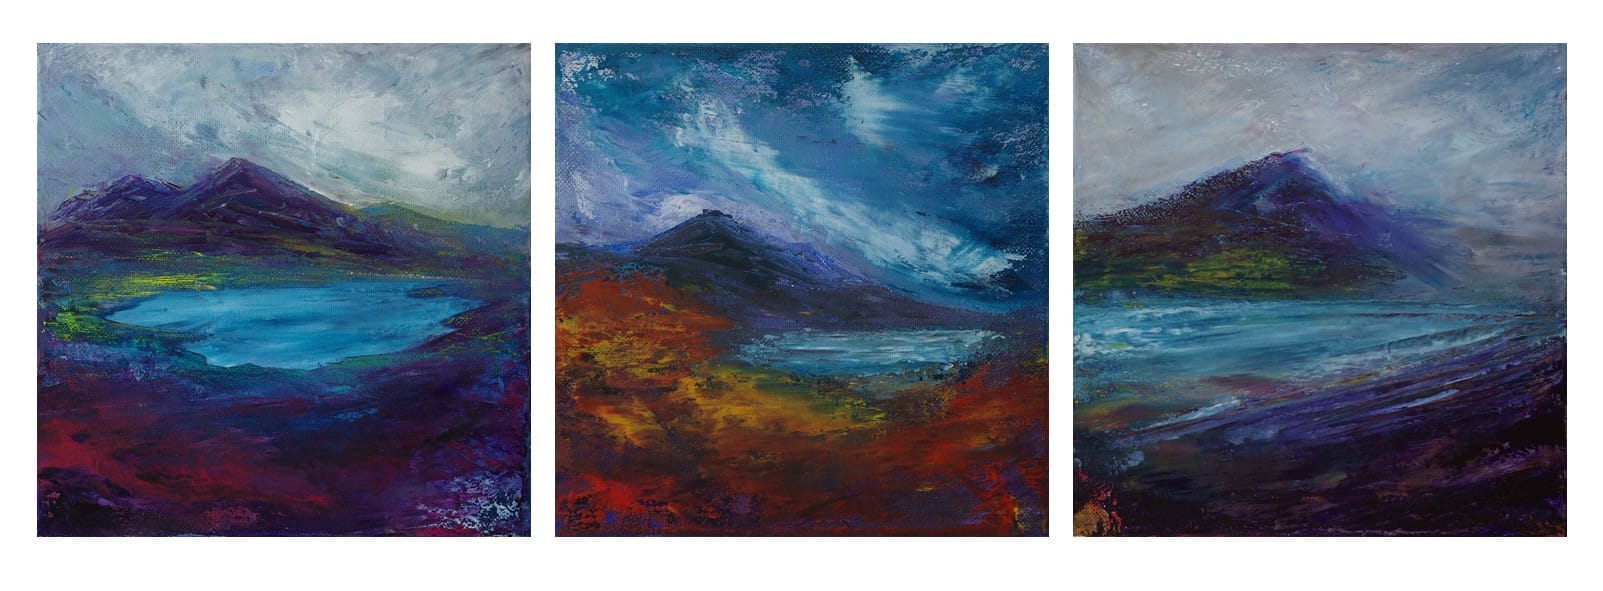 Scottish landscape paintings